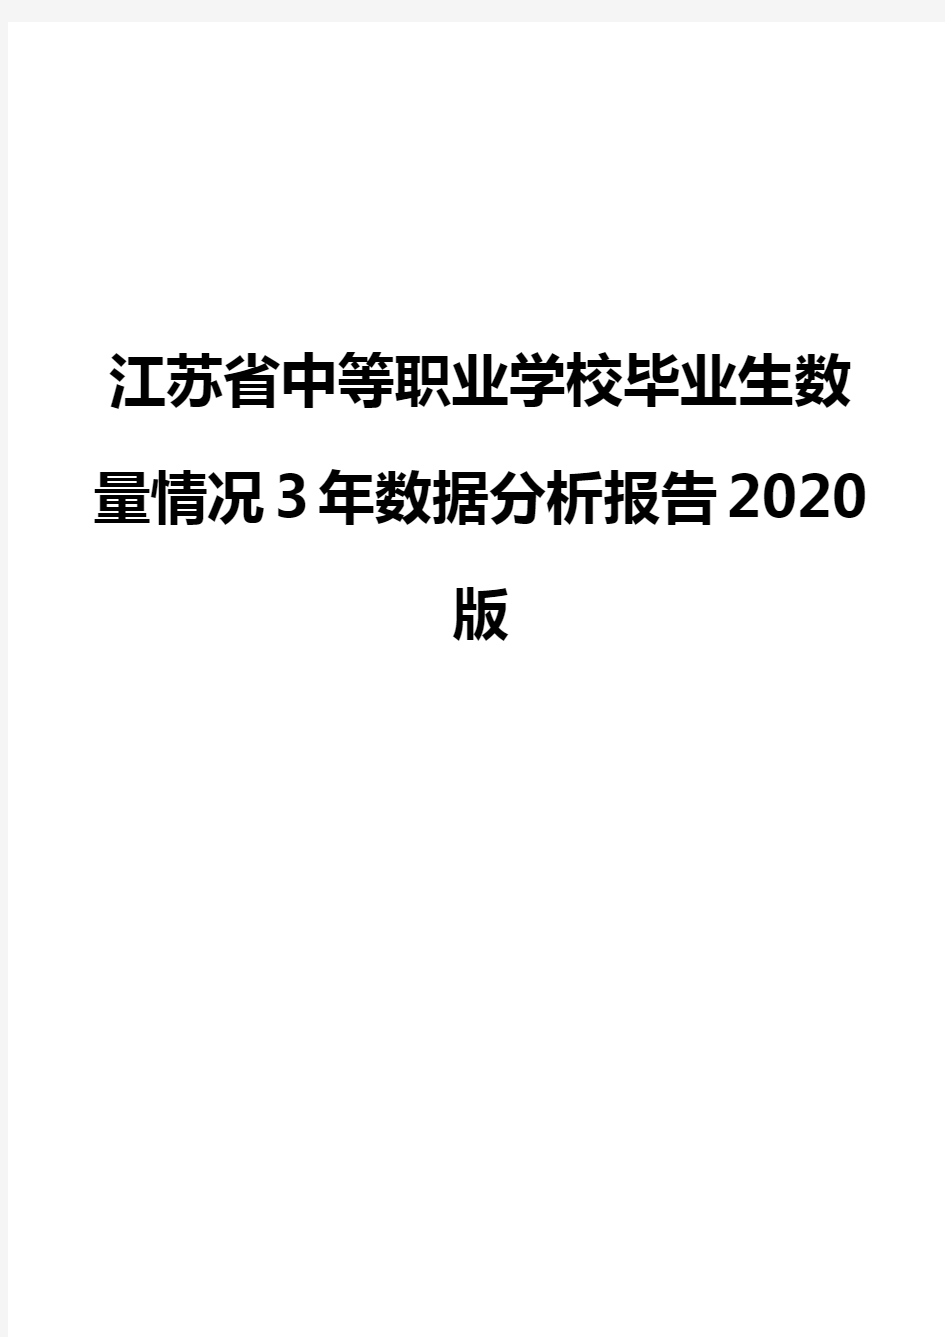 江苏省中等职业学校毕业生数量情况3年数据分析报告2020版